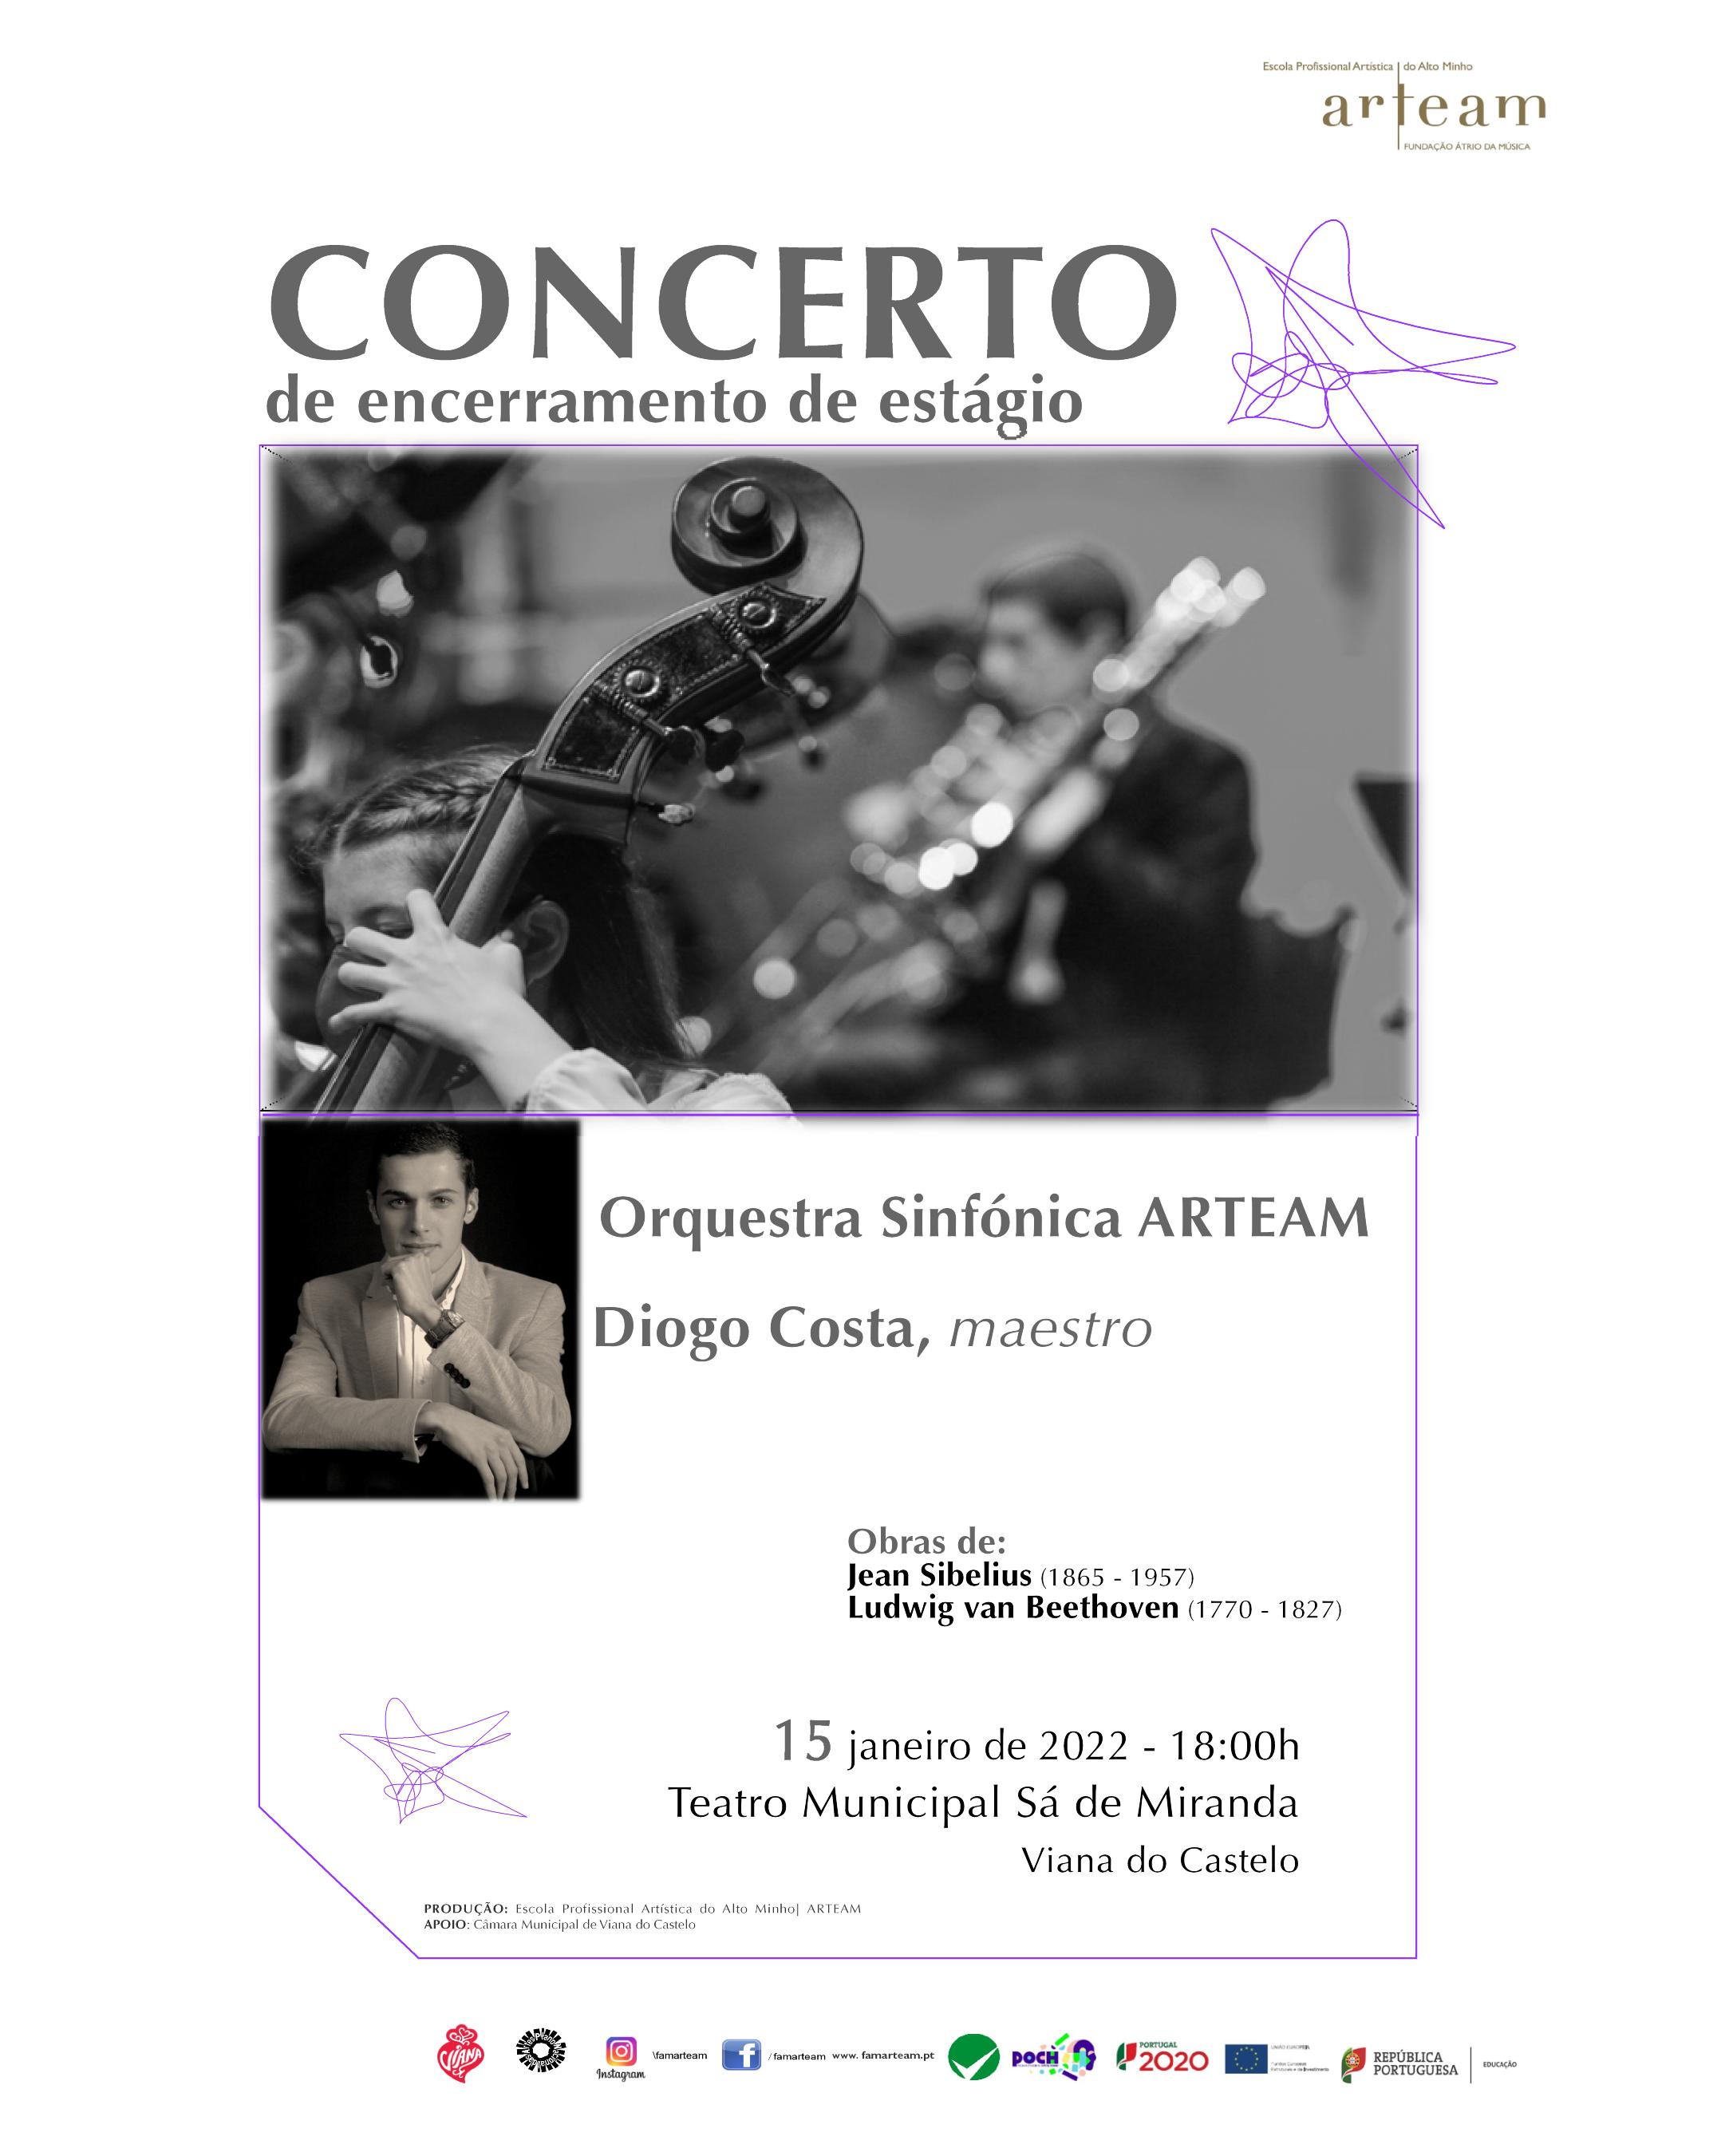 Concerto de Encerramento de Estágio - Orquestra Sinfónica ARTEAM